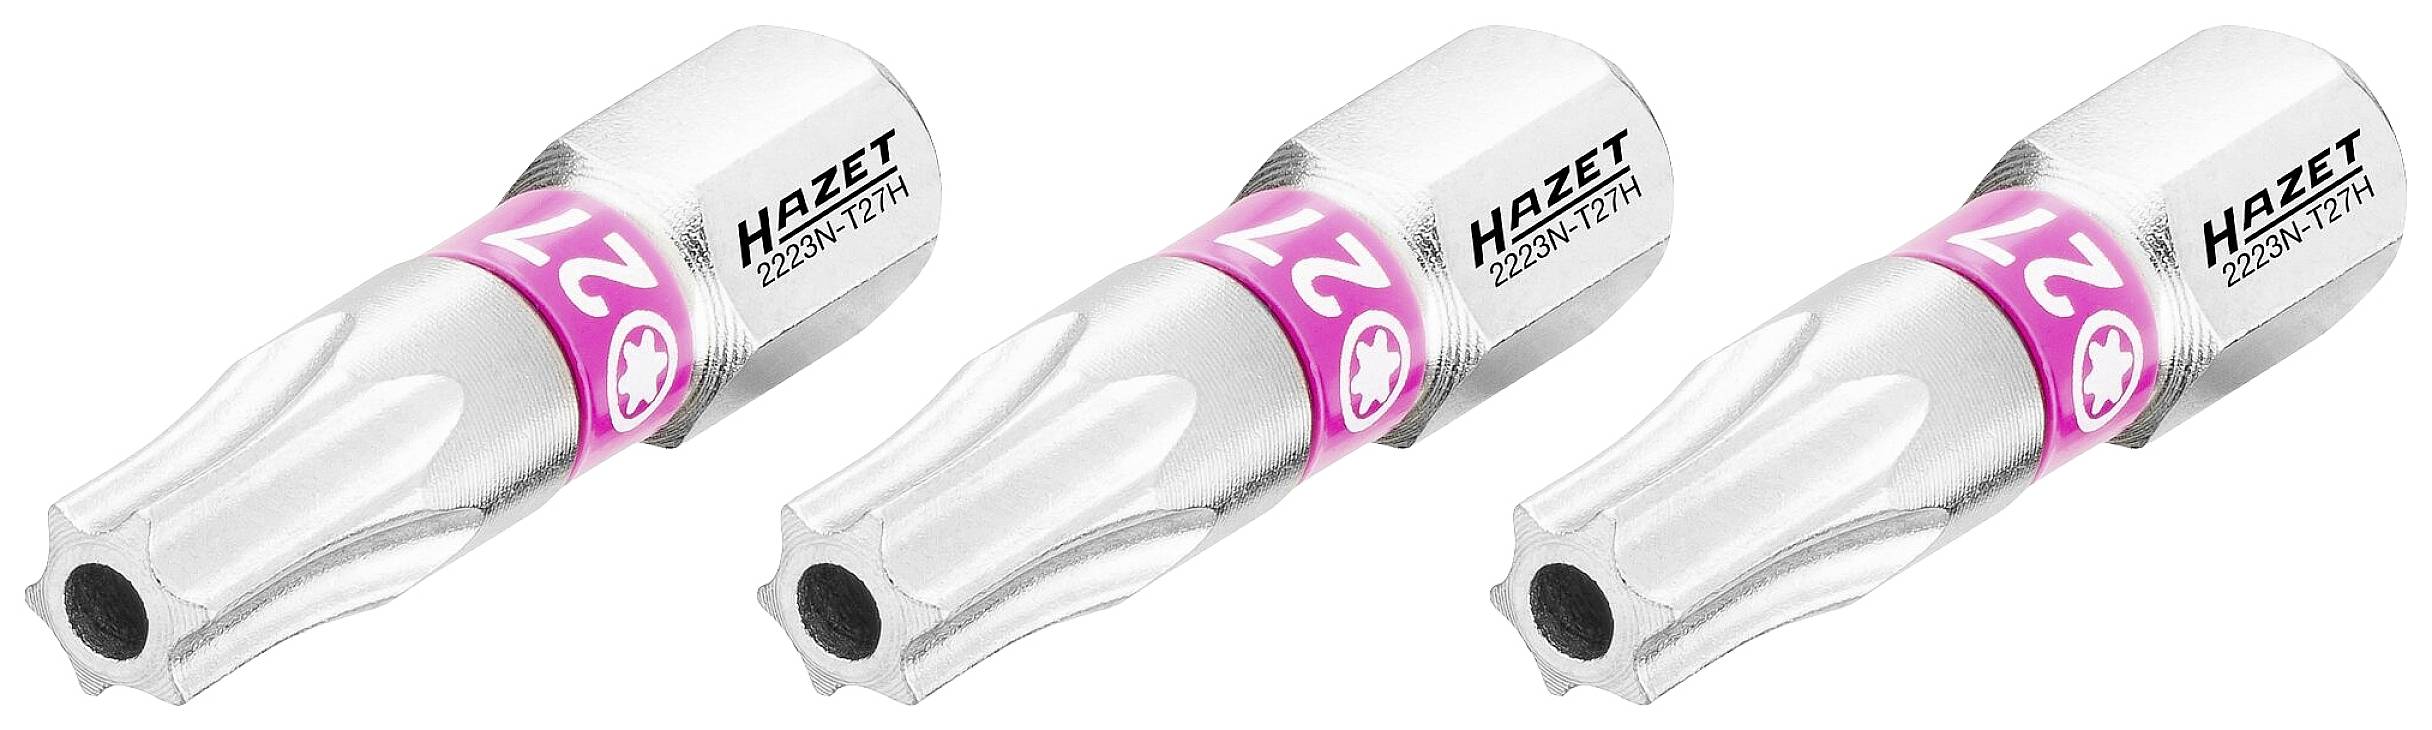 HAZET 2223N-T27H/3 2223N-T27H/3 TX-Bit T 27 H C 6.3 1 St.